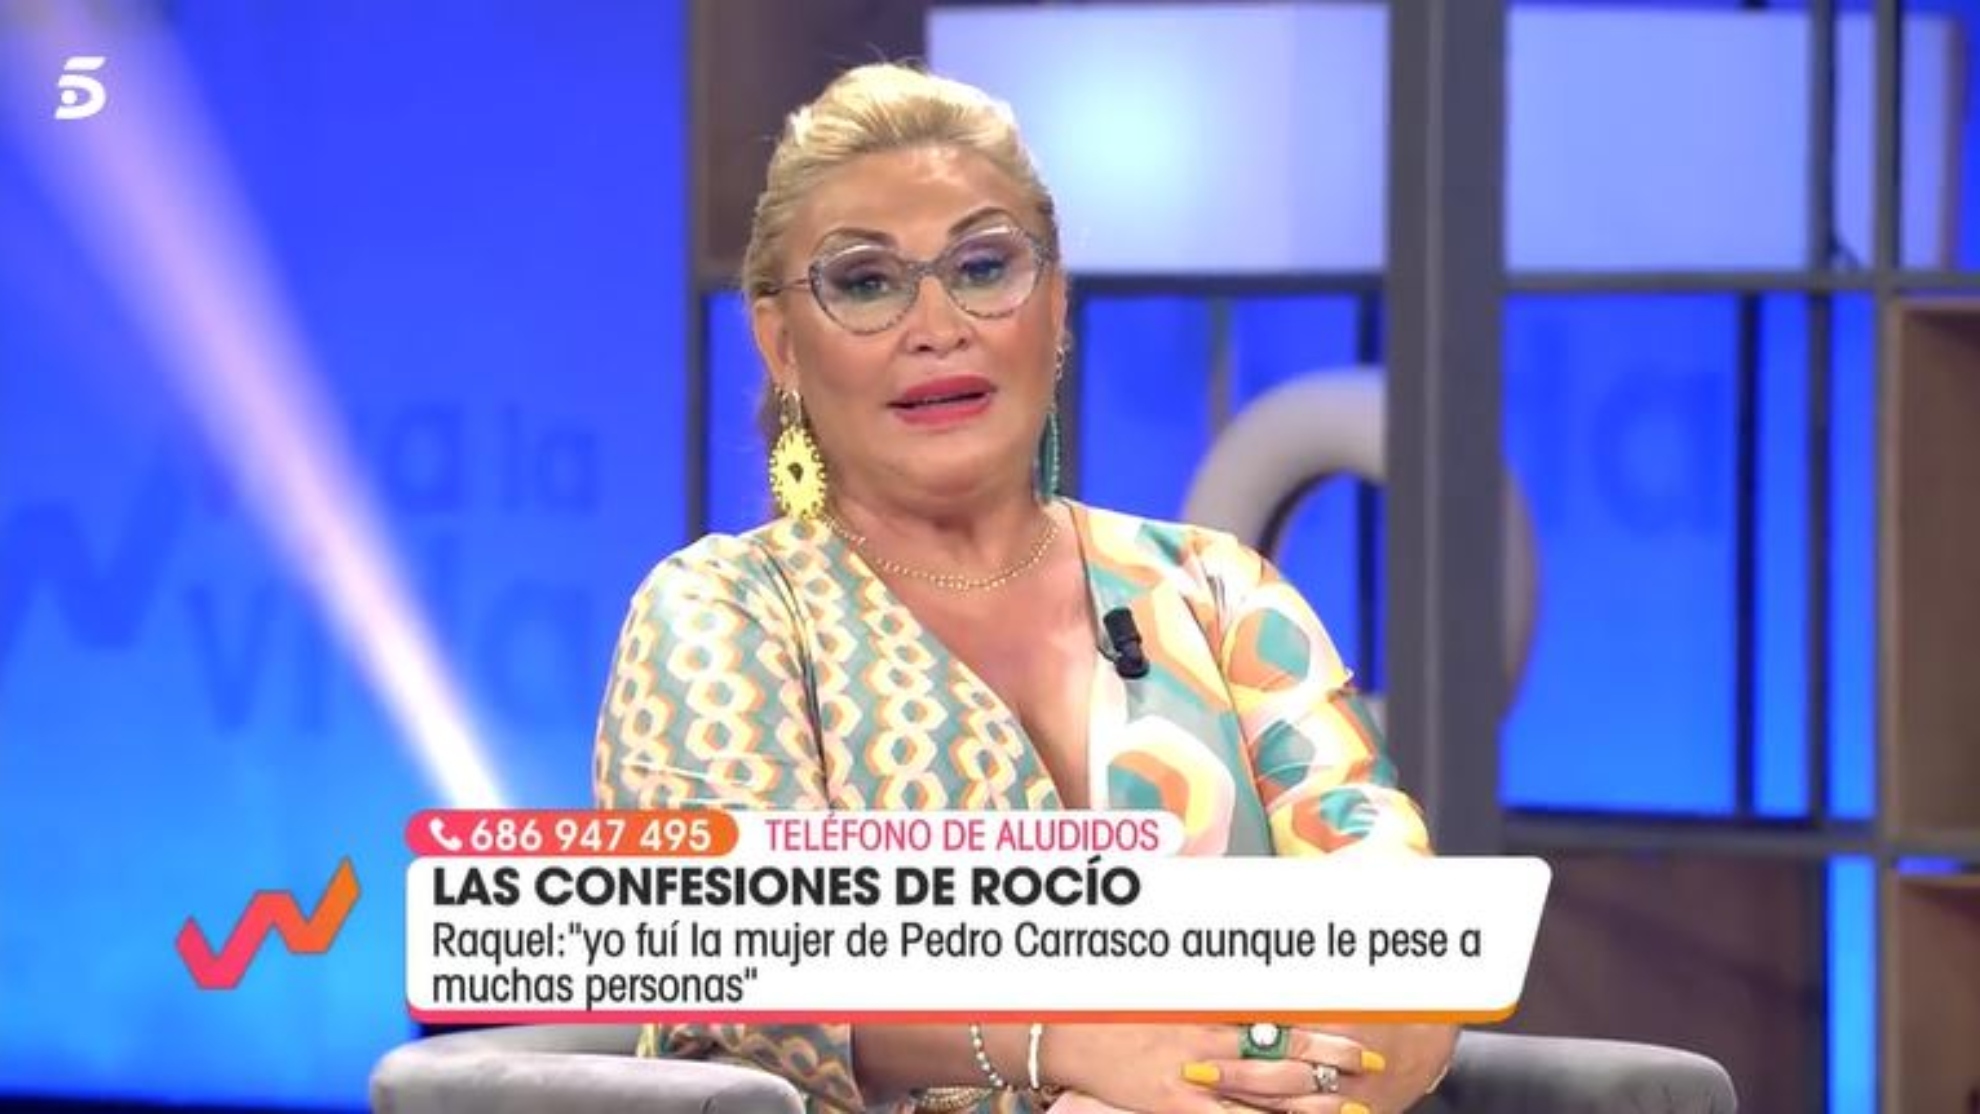 La dura respuesta de Raquel Mosquera a Roco Carrasco: "El amor a un padre se demuestra en vida, no con documentales"